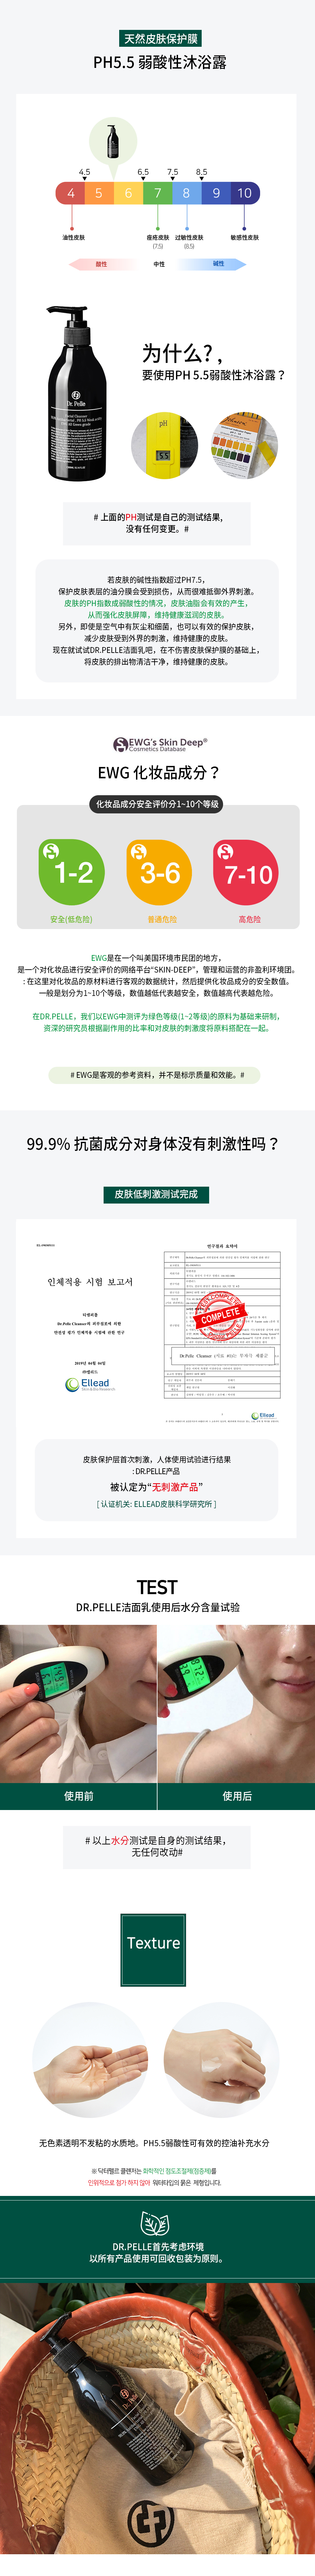 Dr.Pelle99.9%抗菌洁面乳 / 韩国正品 / 韩国直邮 description picture 5